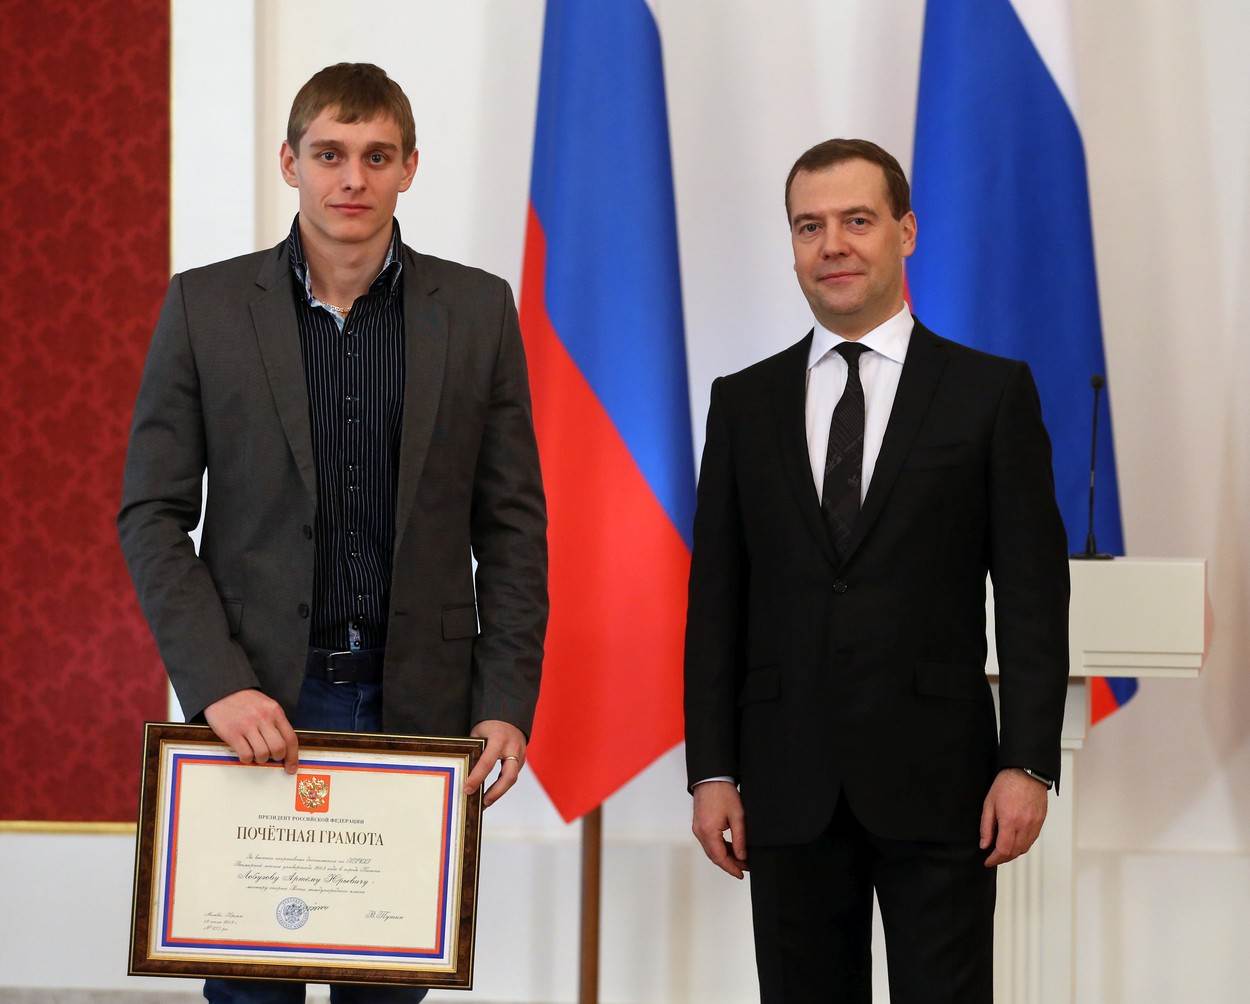  Rusia oduzimaju zlatne medalje u plivanju 